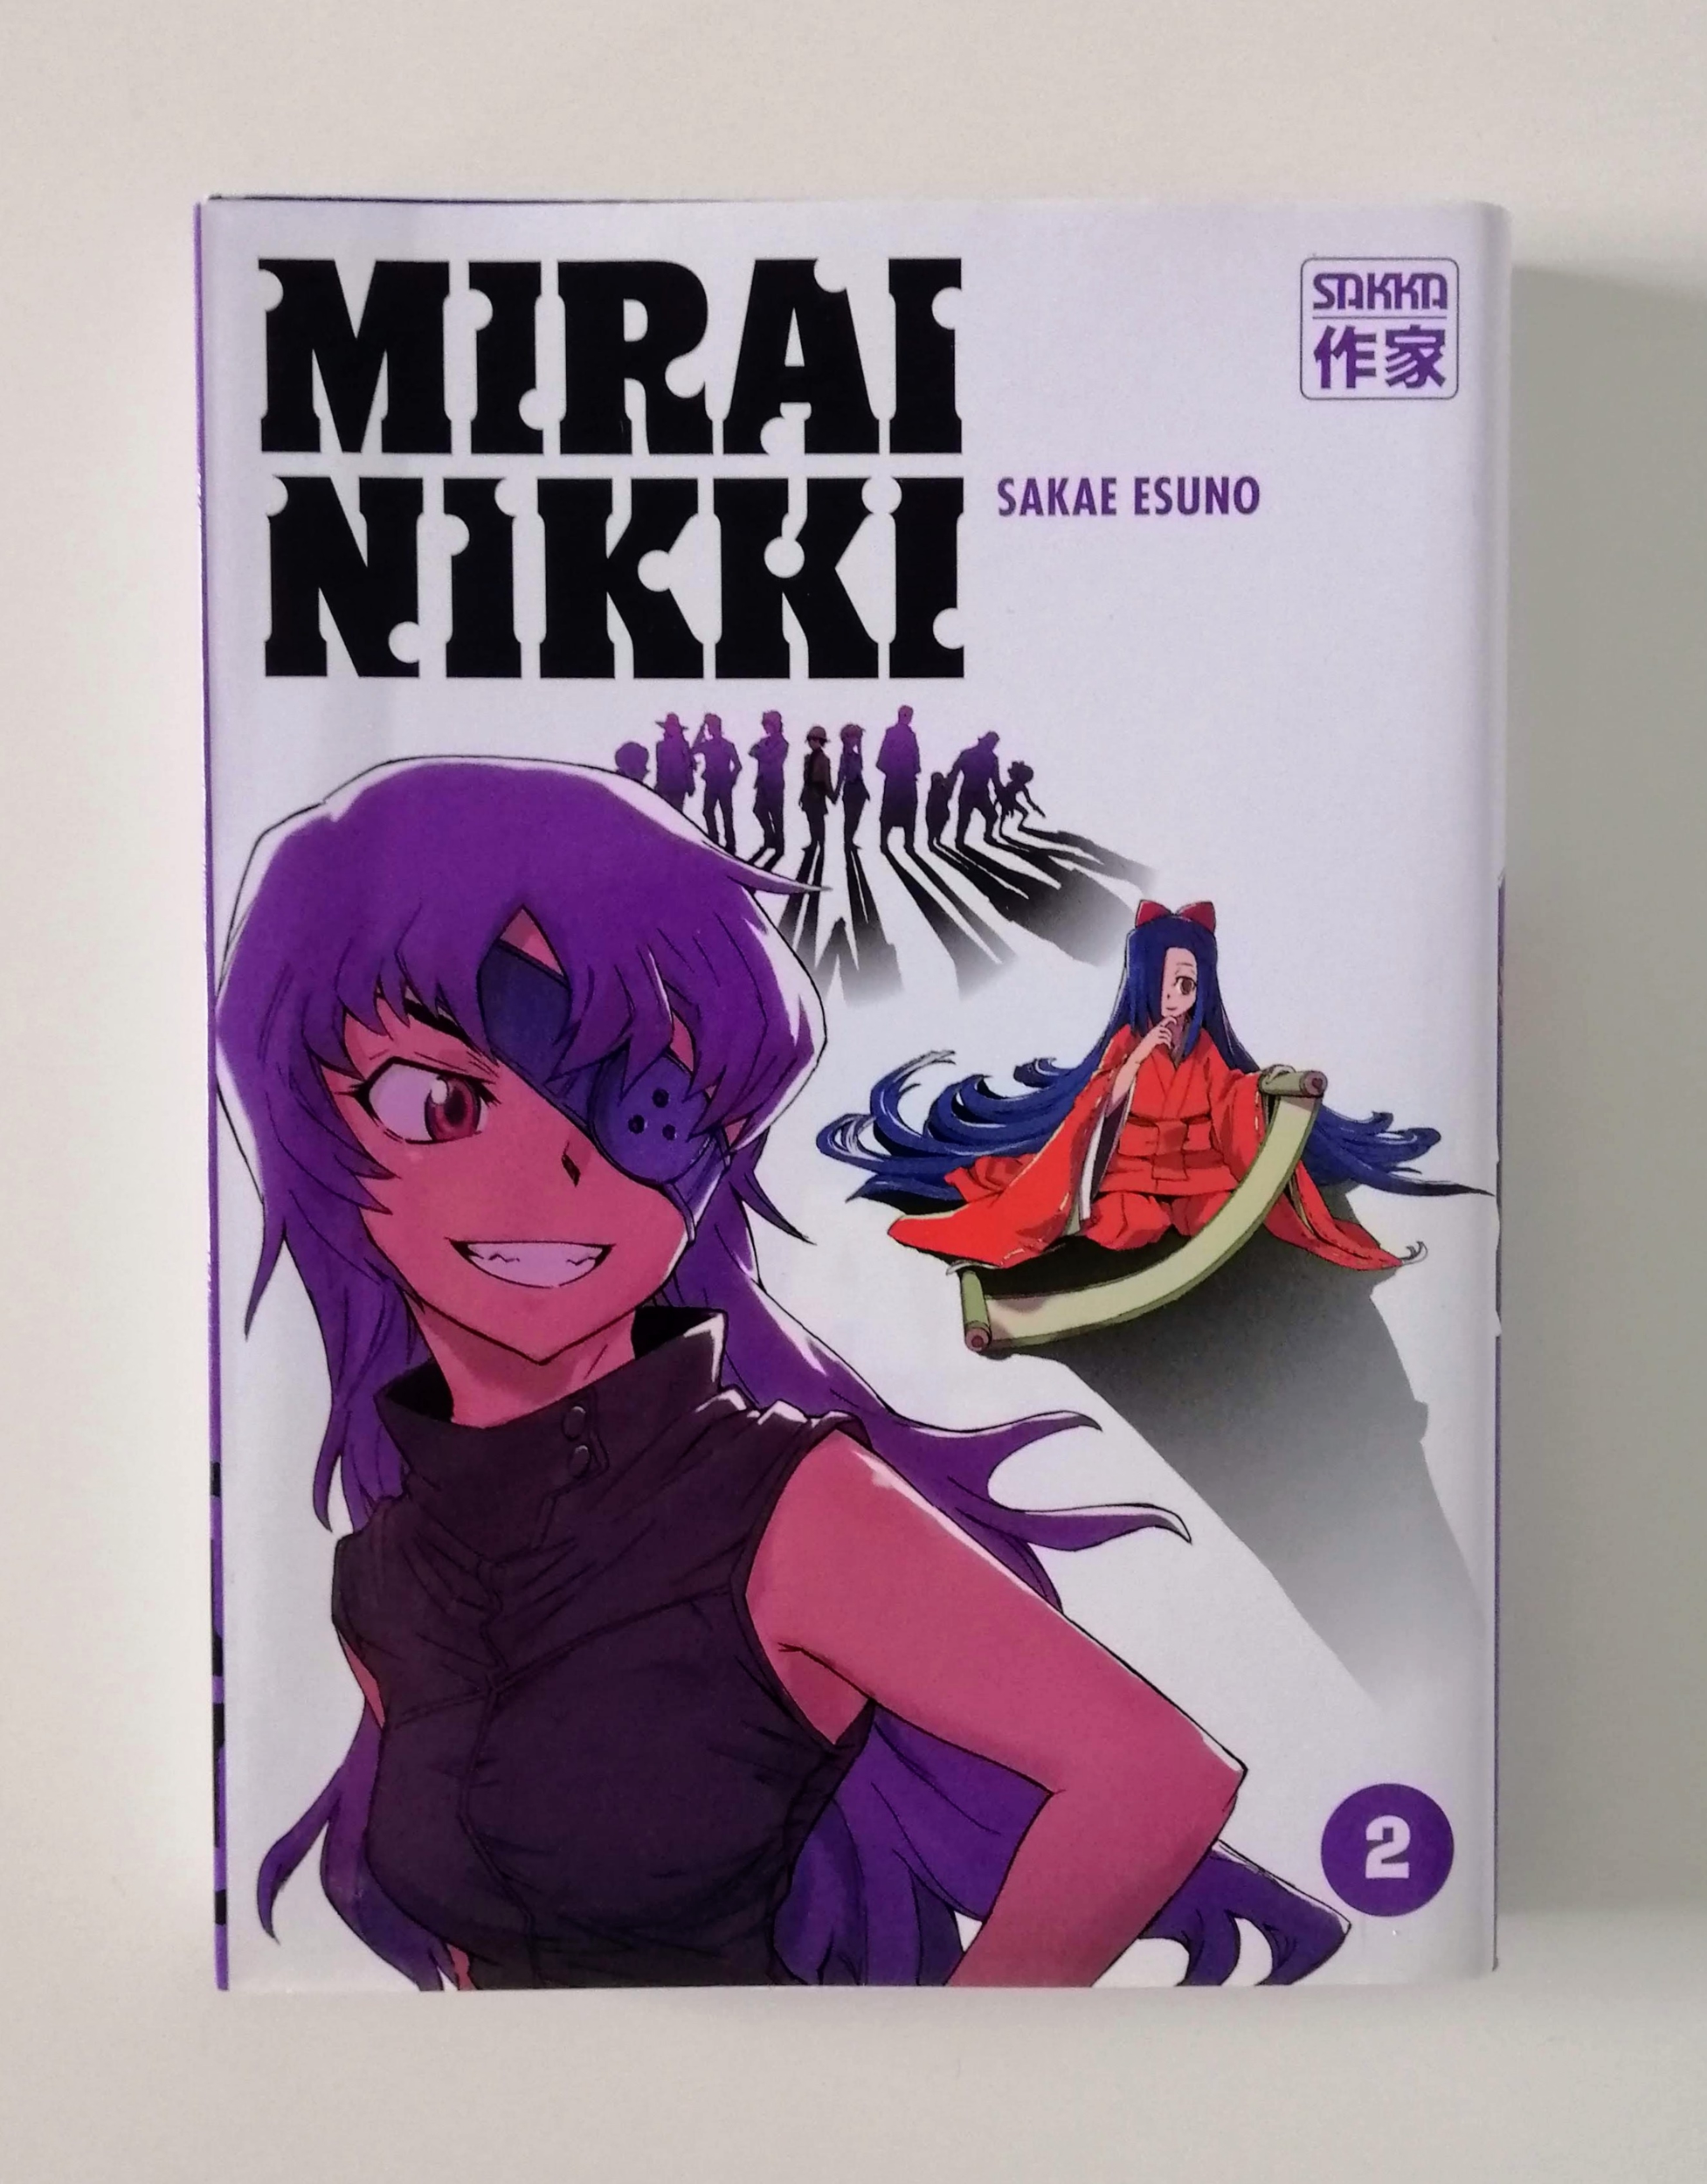 Mirai Nikki II (Sakae Esuno)